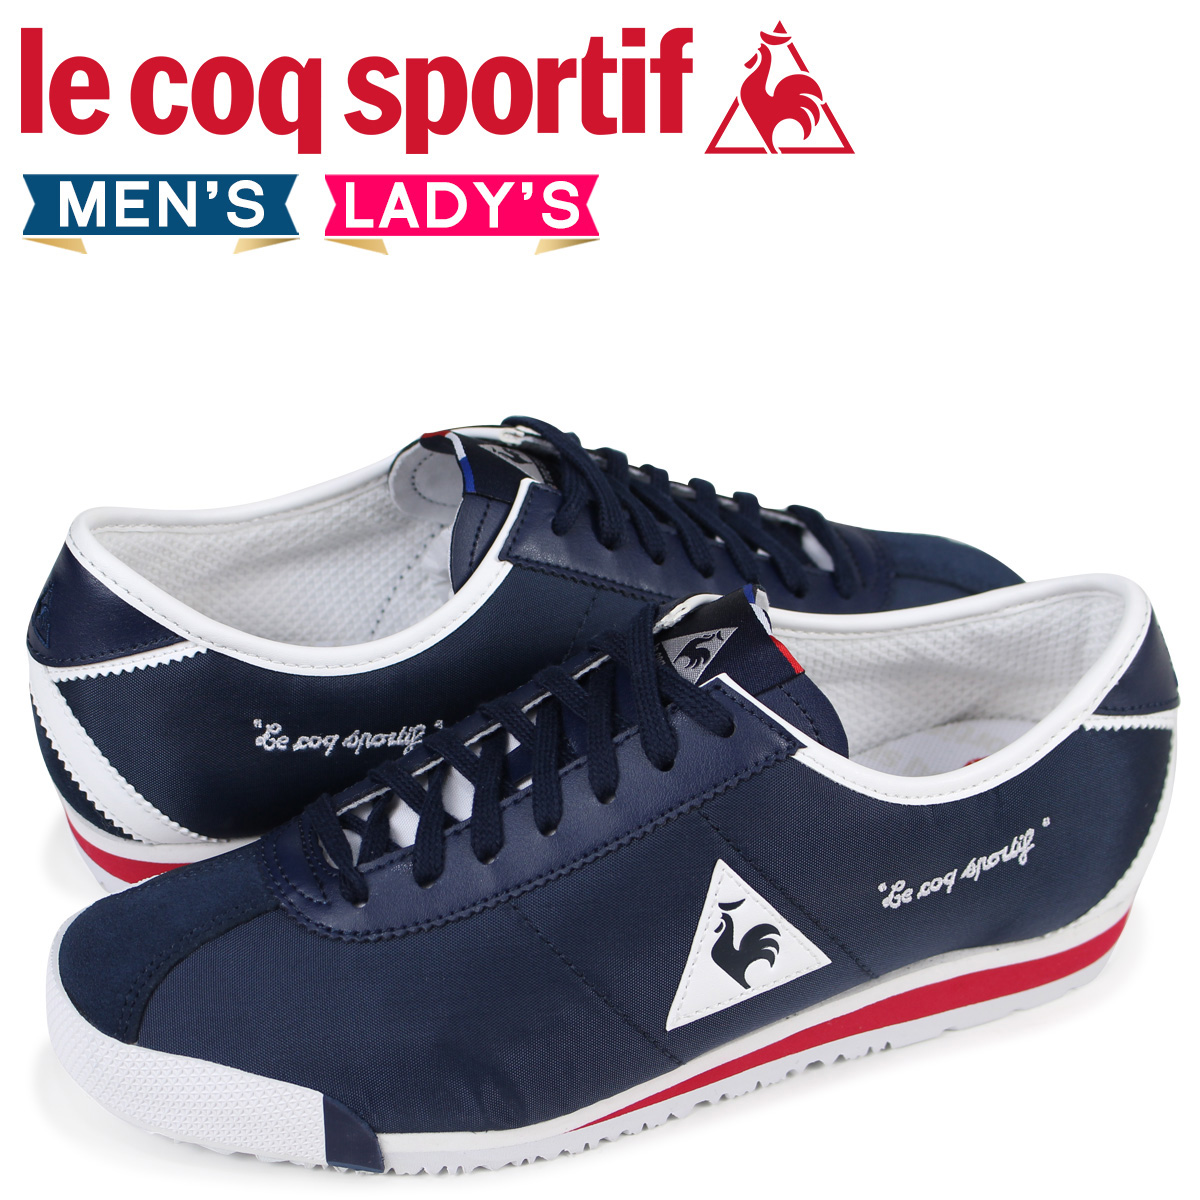 le coq sportif shoes